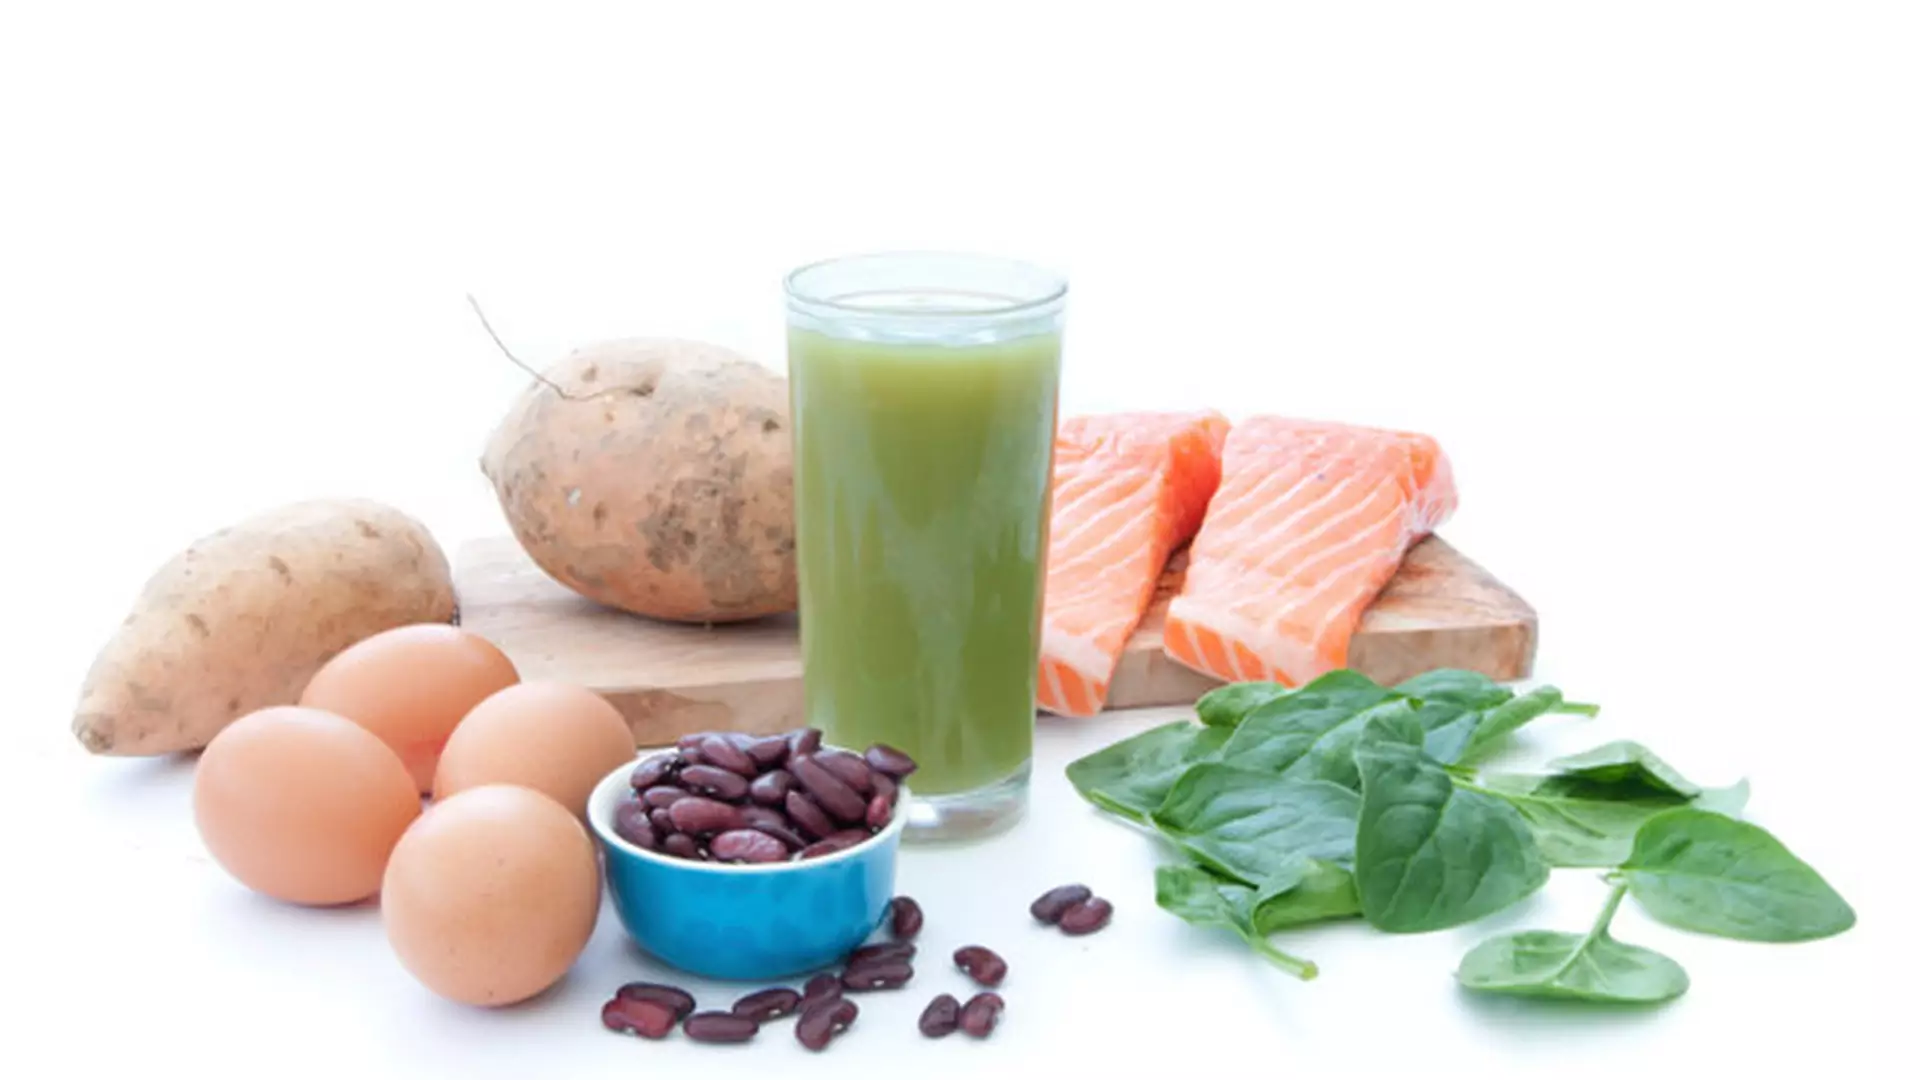 Pięć najzdrowszych źródeł białka. Karm nimi całą rodzinę